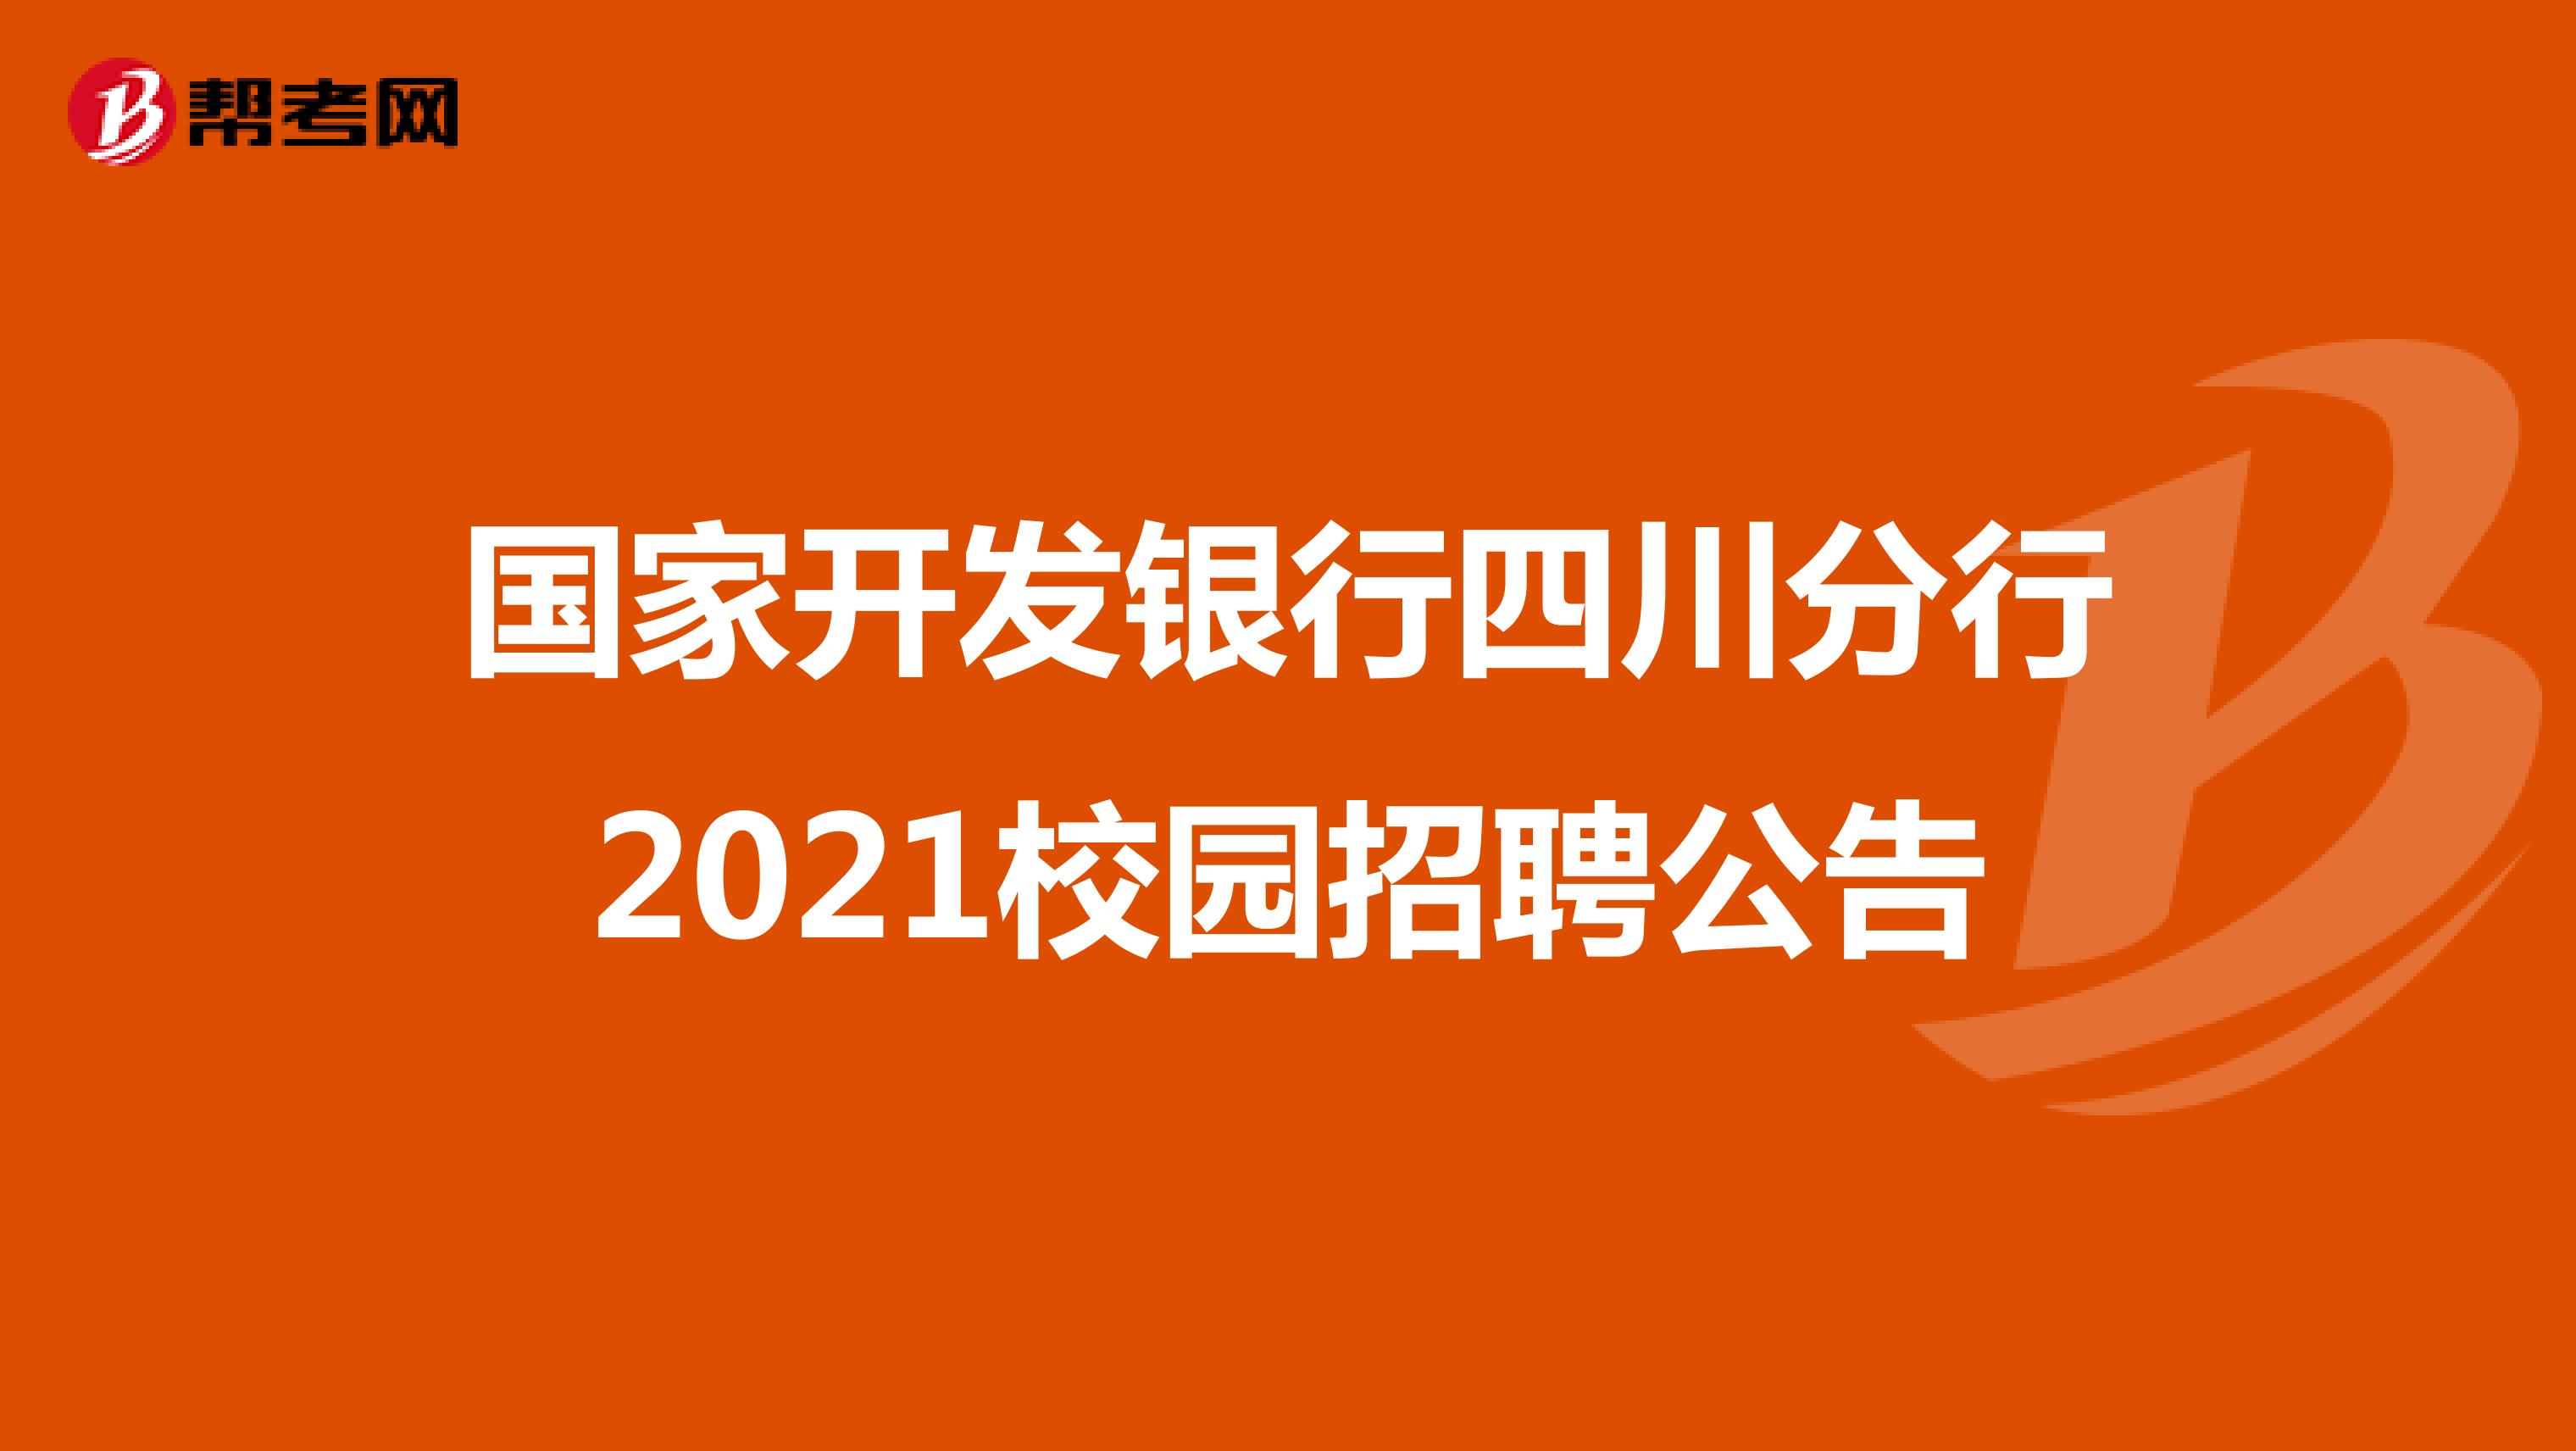 国家开发银行四川分行2021校园招聘公告